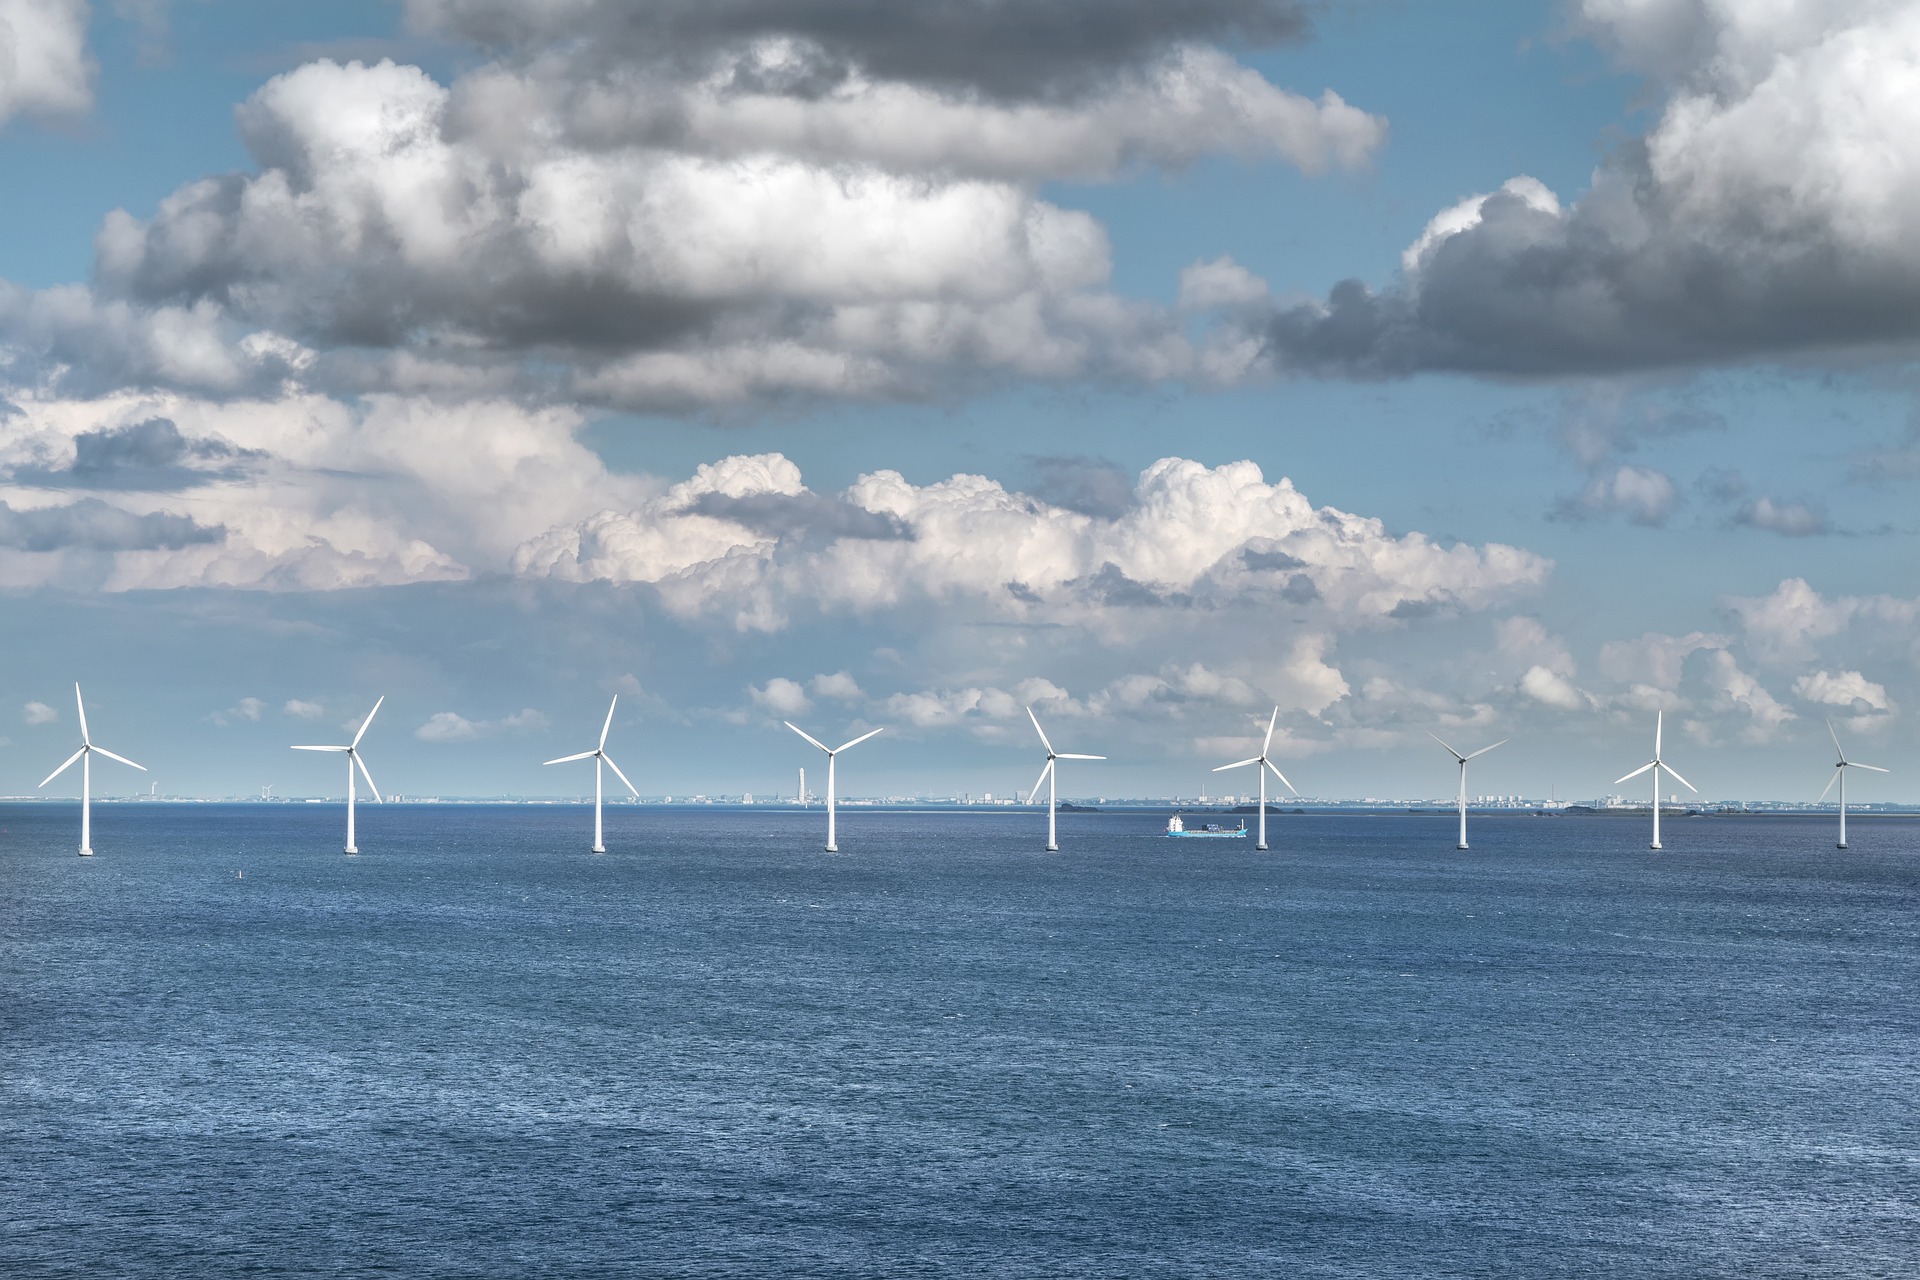 Portos, transmissão e regulação são incertezas para eólicas offshore no Brasil. Na imagem: Turbinas eólicas em alto mar para geração offshore (Foto: Enrique/Pixabay)